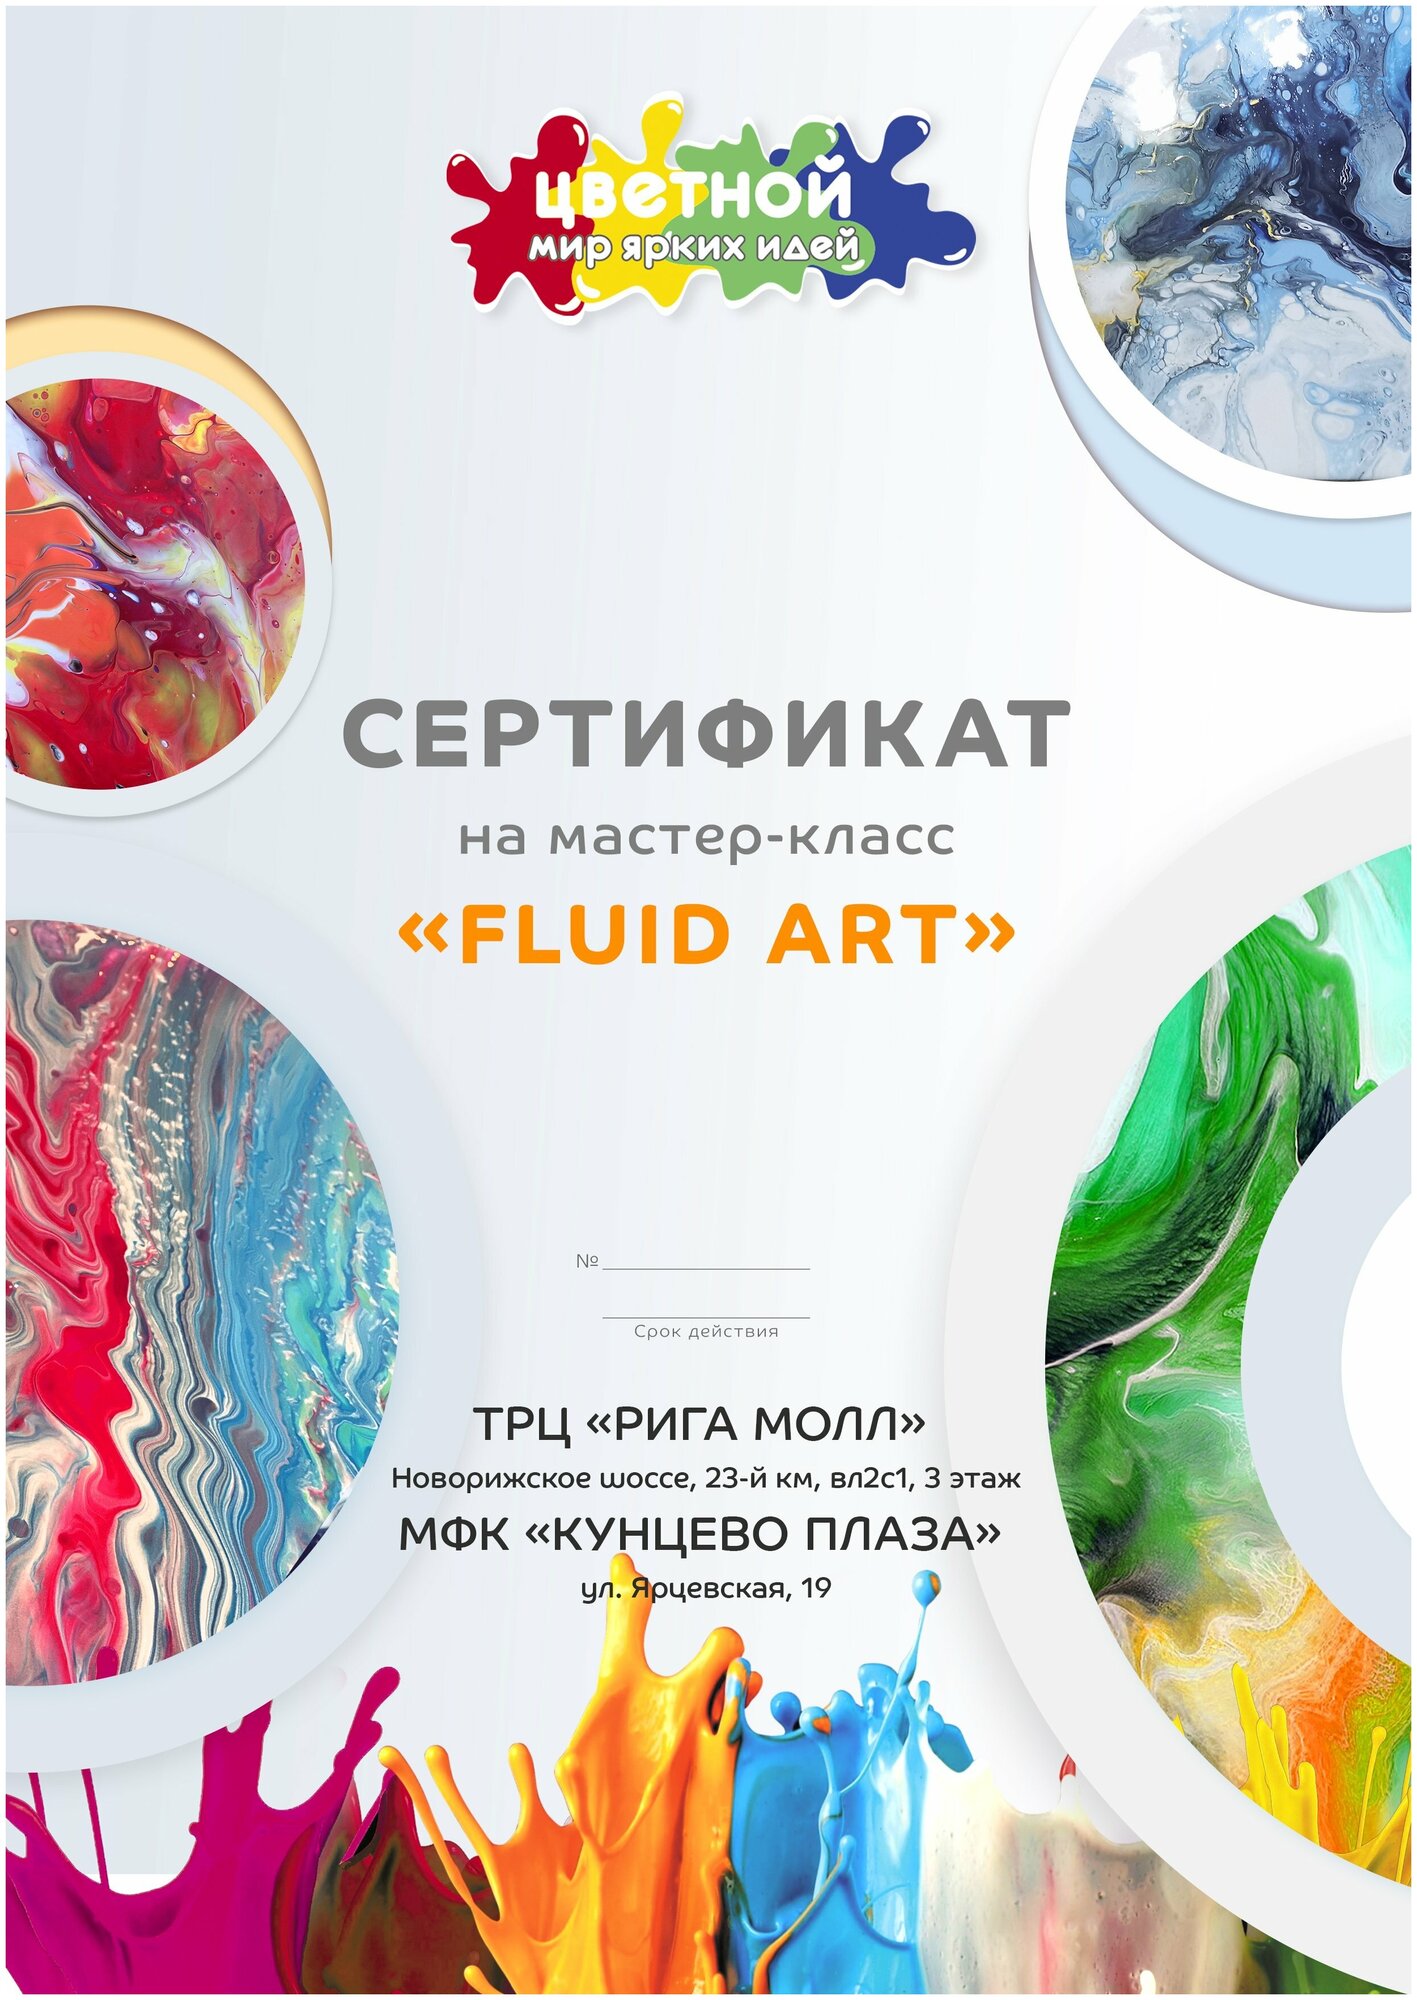 Подарочный сертификат на мастер-класс по Fluid Art